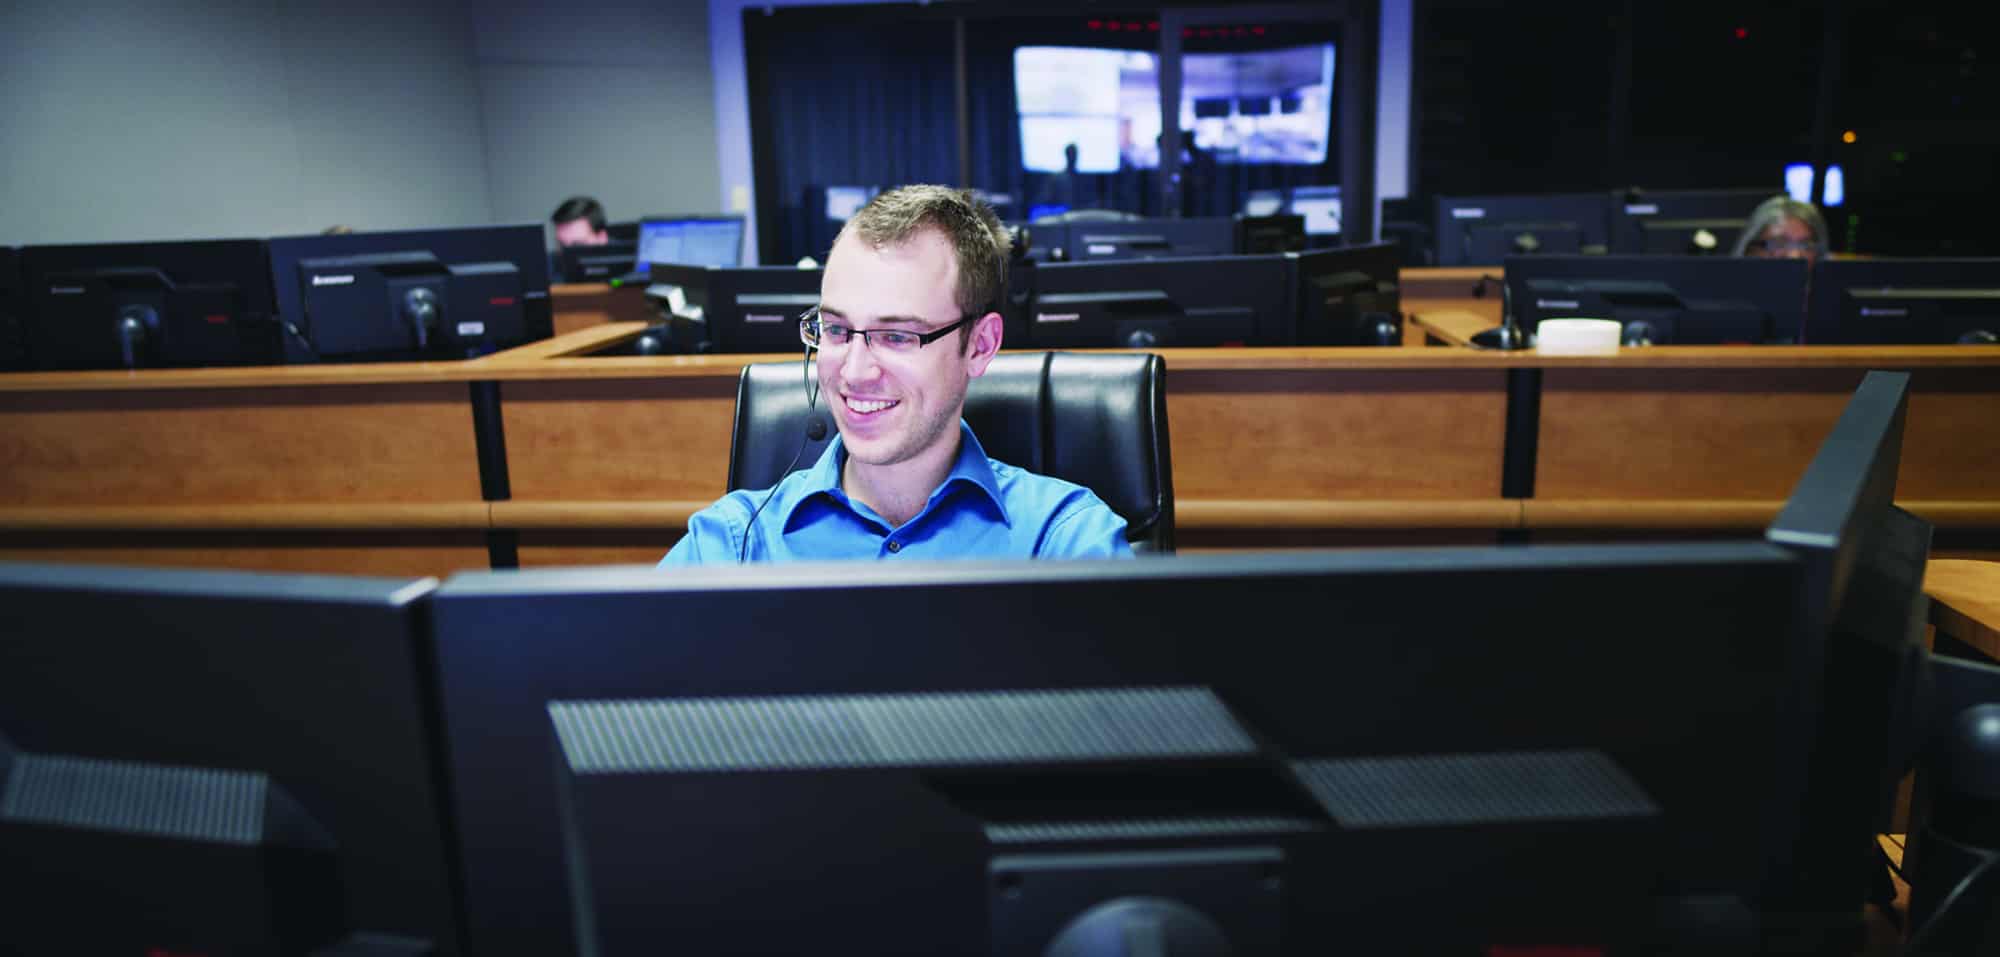 24/7 technology help desk support staff member at desk